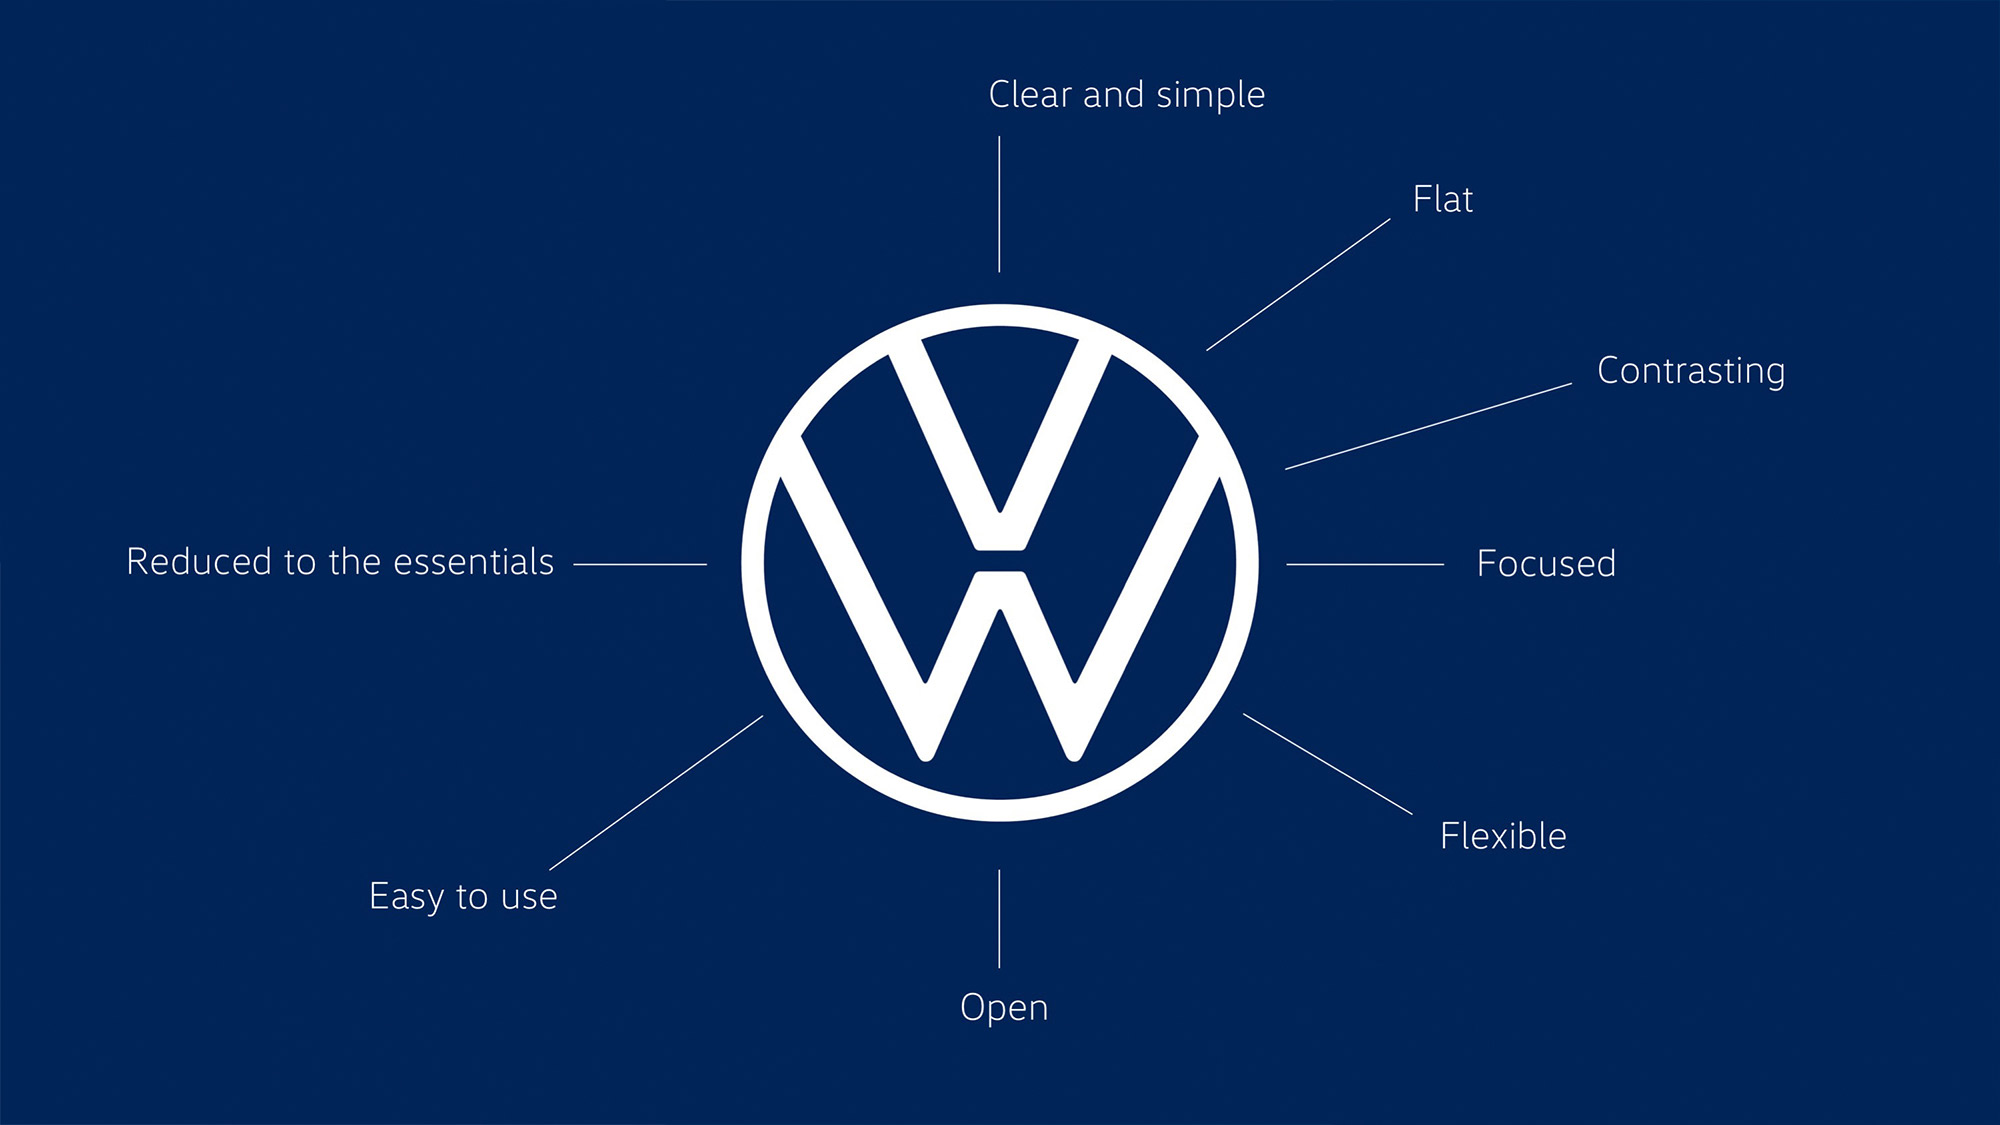 Volkswagen neuer Markenauftritt, Quelle: Volkswagen